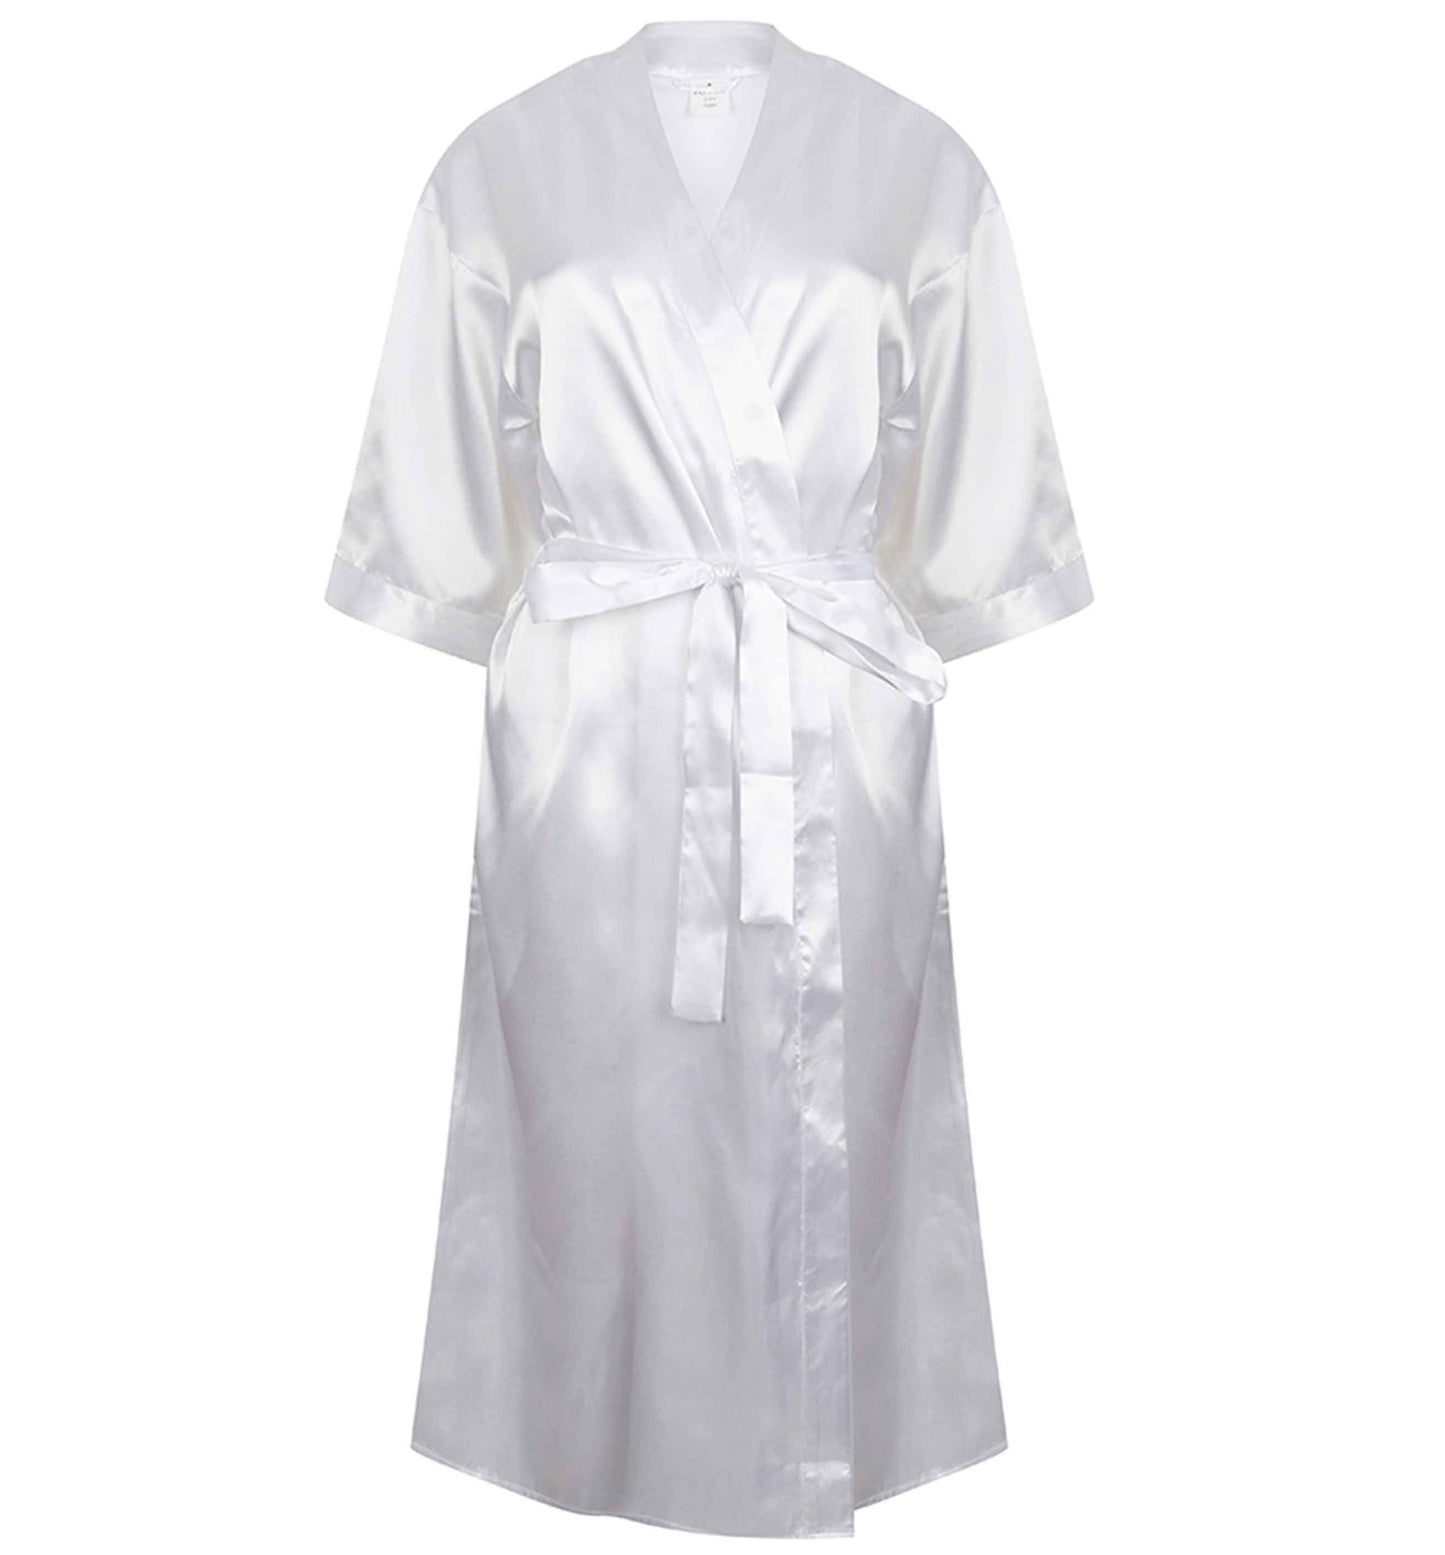 Tipsy tonight married tomorrow | 8-18 | Kimono style satin robe | Ladies dressing gown